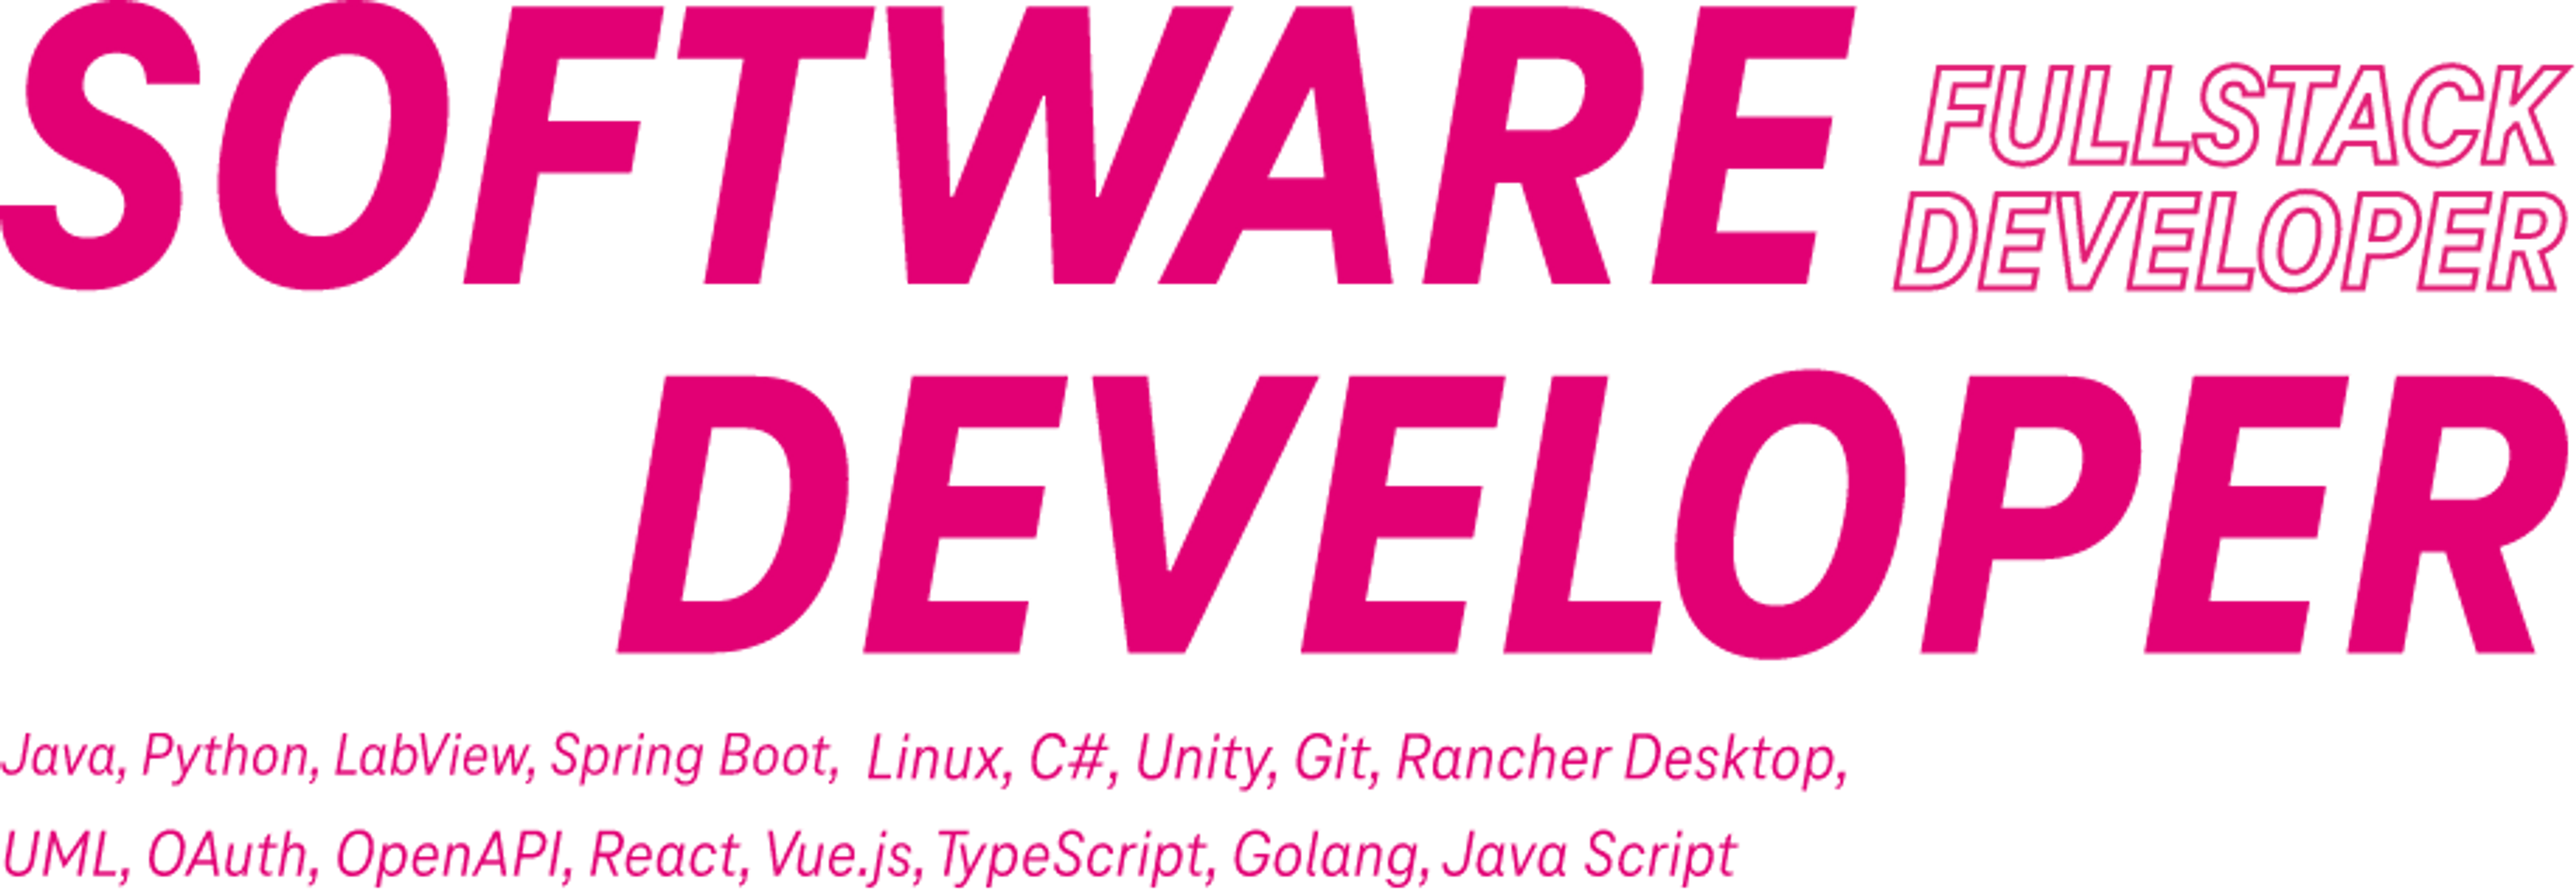 software-developer.png